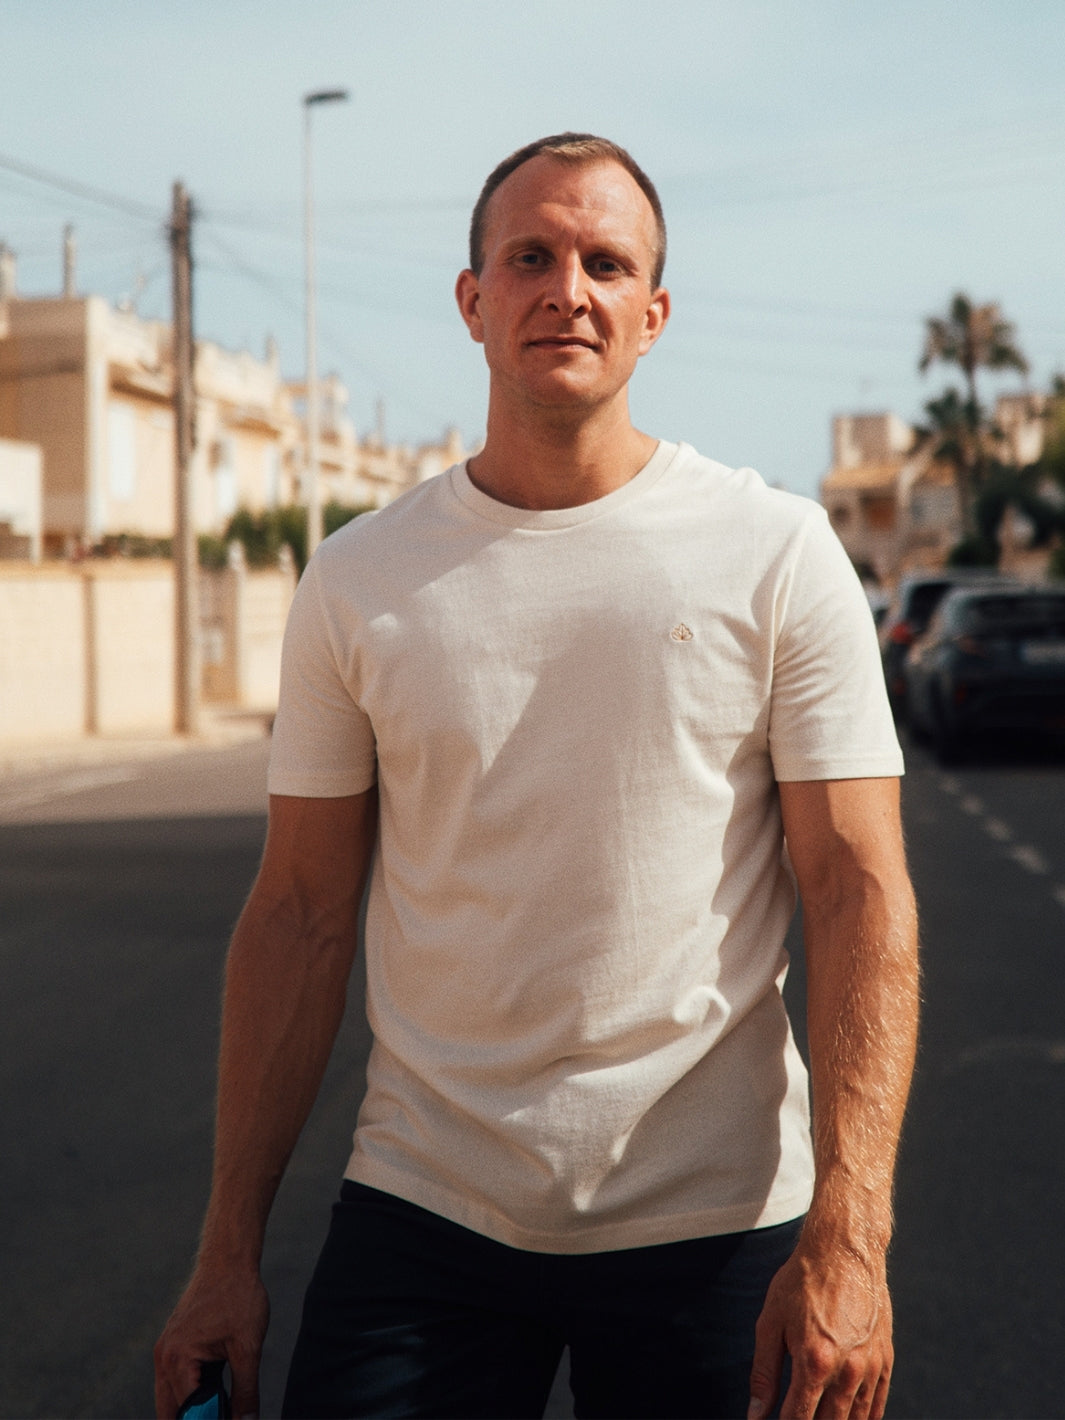 Feel pánské tričko z biobavlny s kulatým výstřihem přírodní nebarvené muž jde po ulici